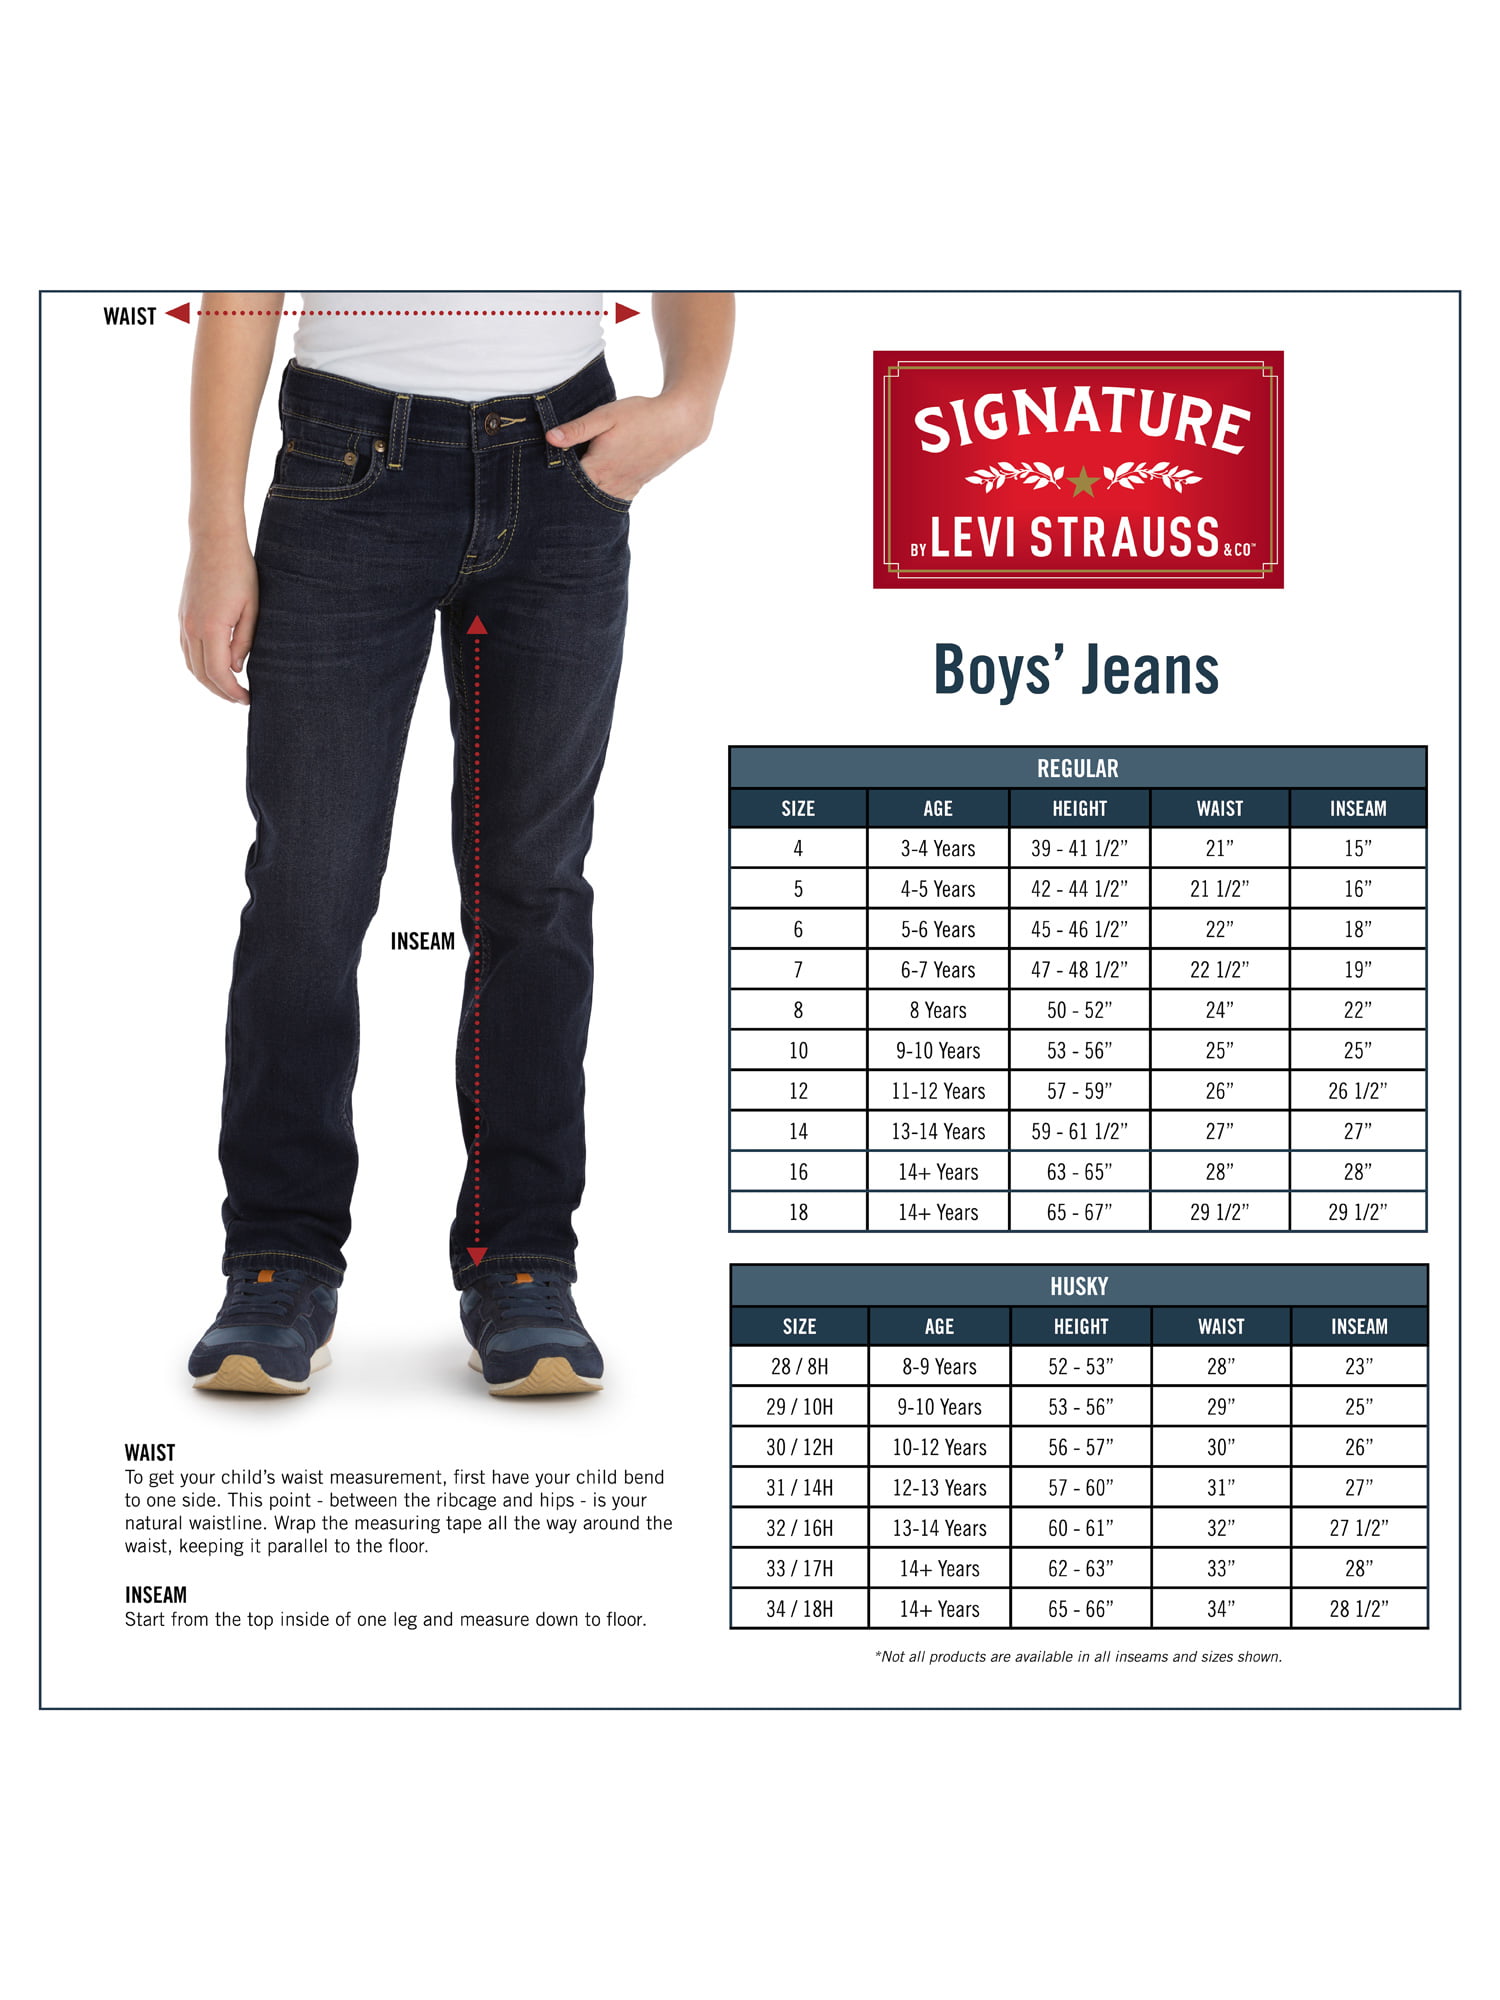 levis boys jeans size chart